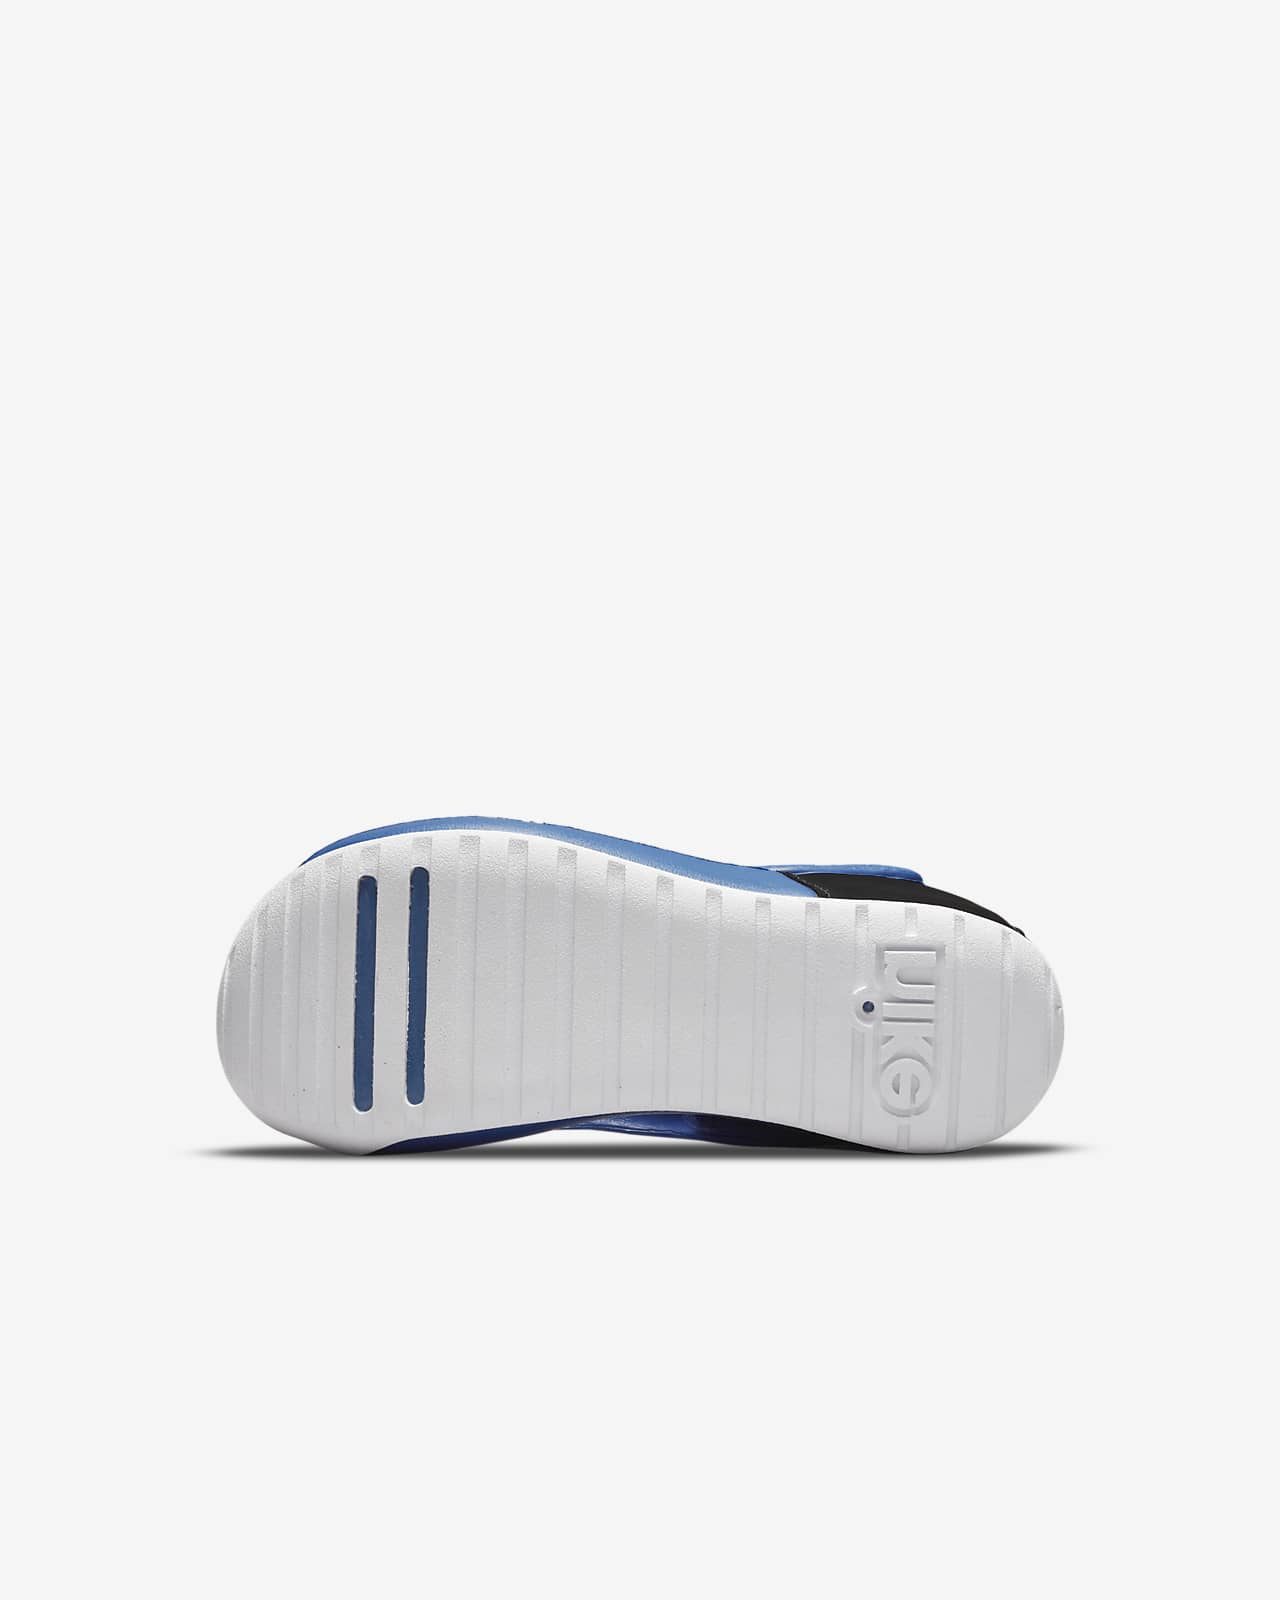 røg nationalsang Skibform Nike Sunray Protect 3-sandaler til mindre børn. Nike DK